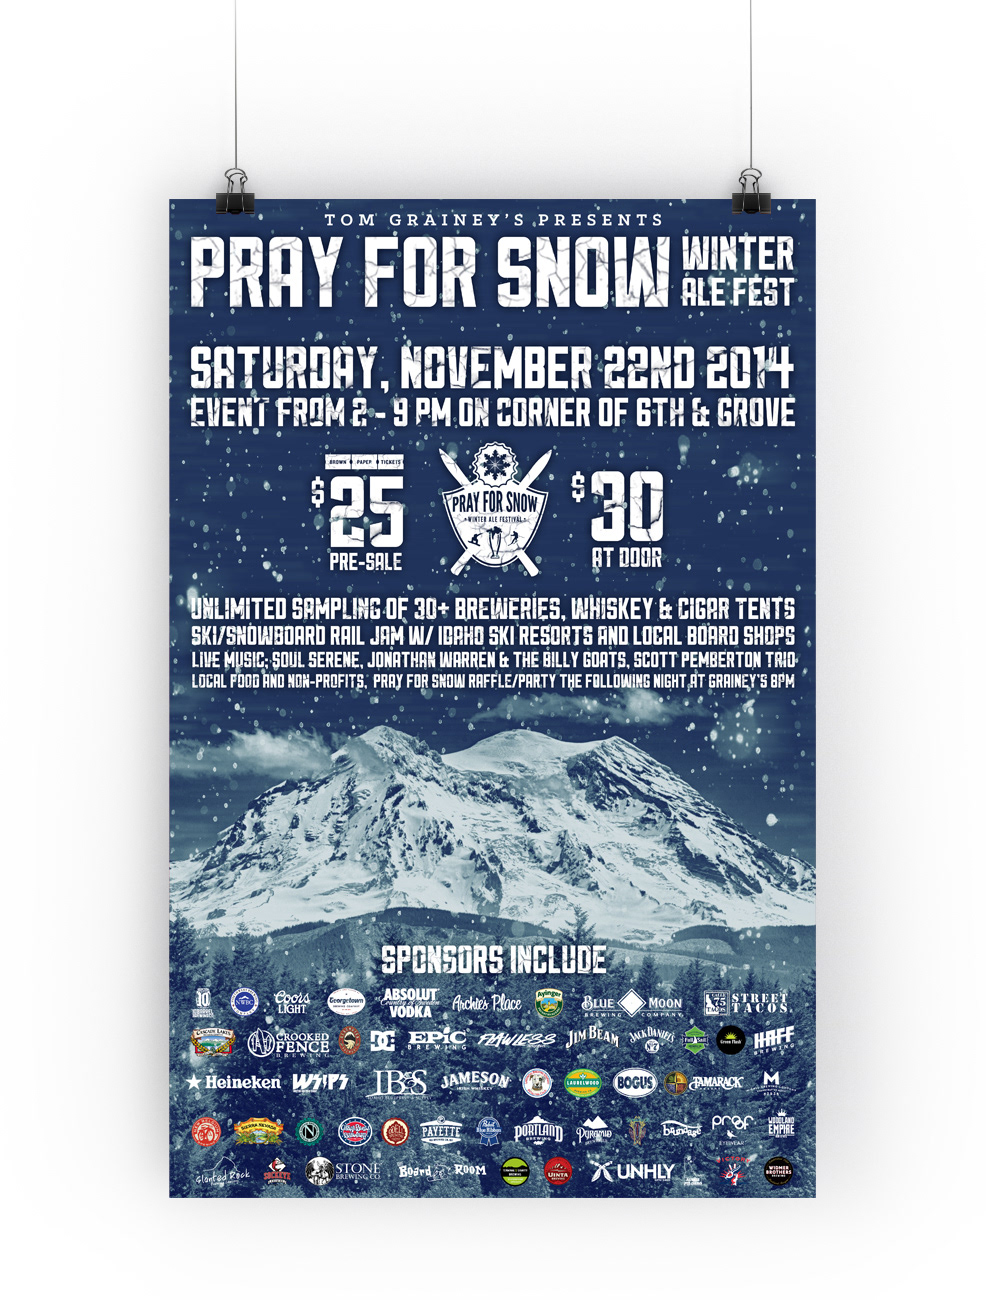 boise Idaho Winter Ale Festival pray for snow beer festival rail jam Snowboarding skiing beer